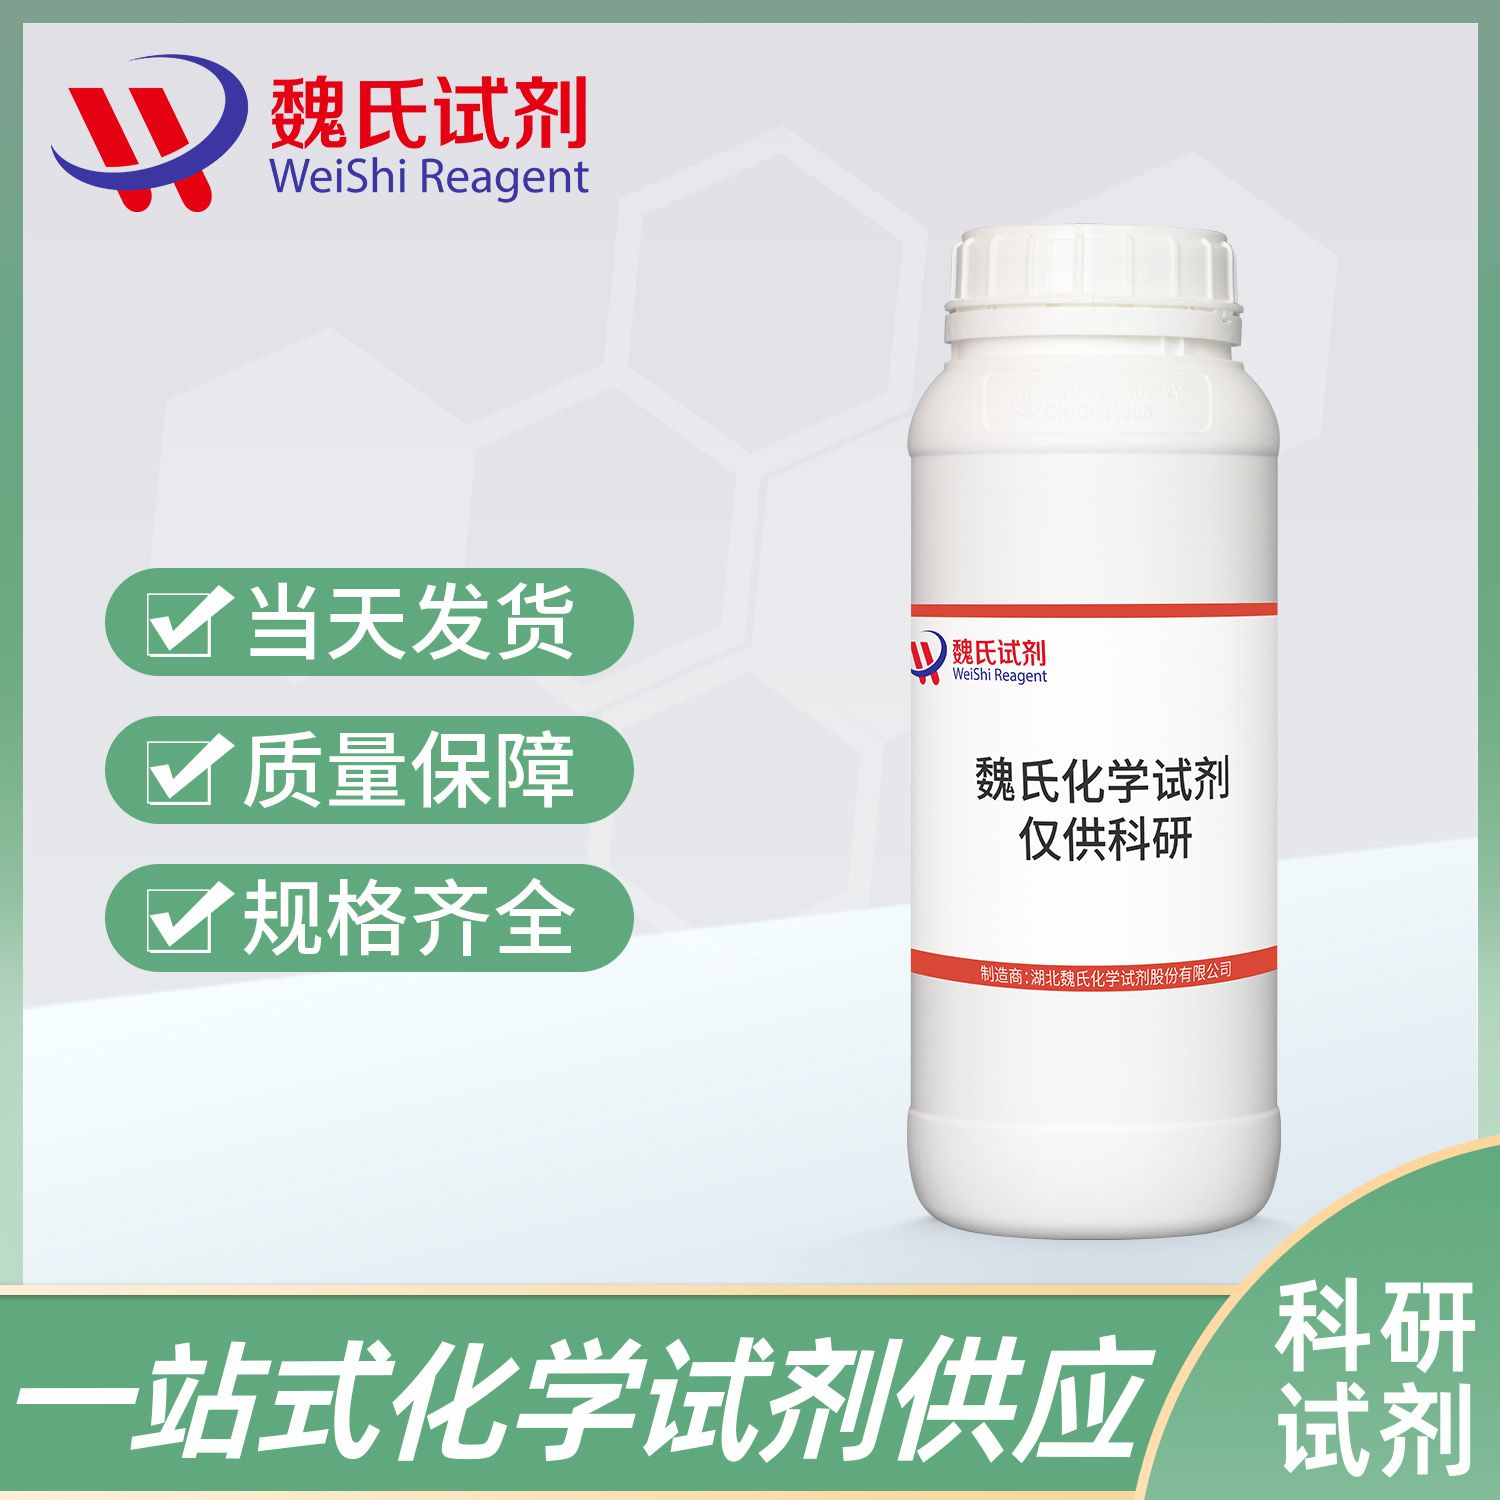 L(-)岩藻糖—2438-80-4—L-Fucose